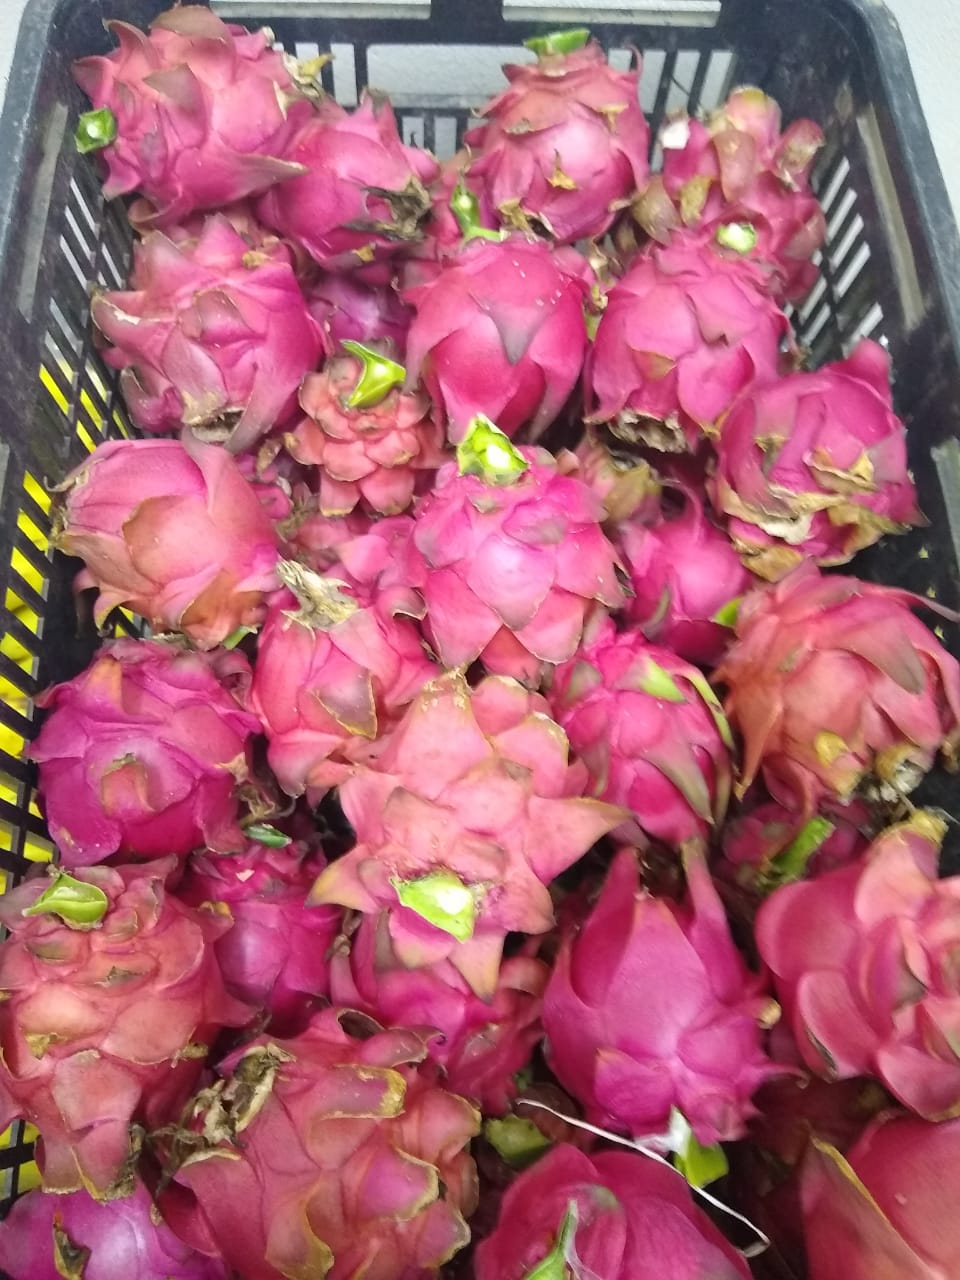 Raros cultivos nuevos: La pitaya se investiga en Formosa desde 2012 y ahora  está en búsqueda de productores que se le animen » Bichos de Campo